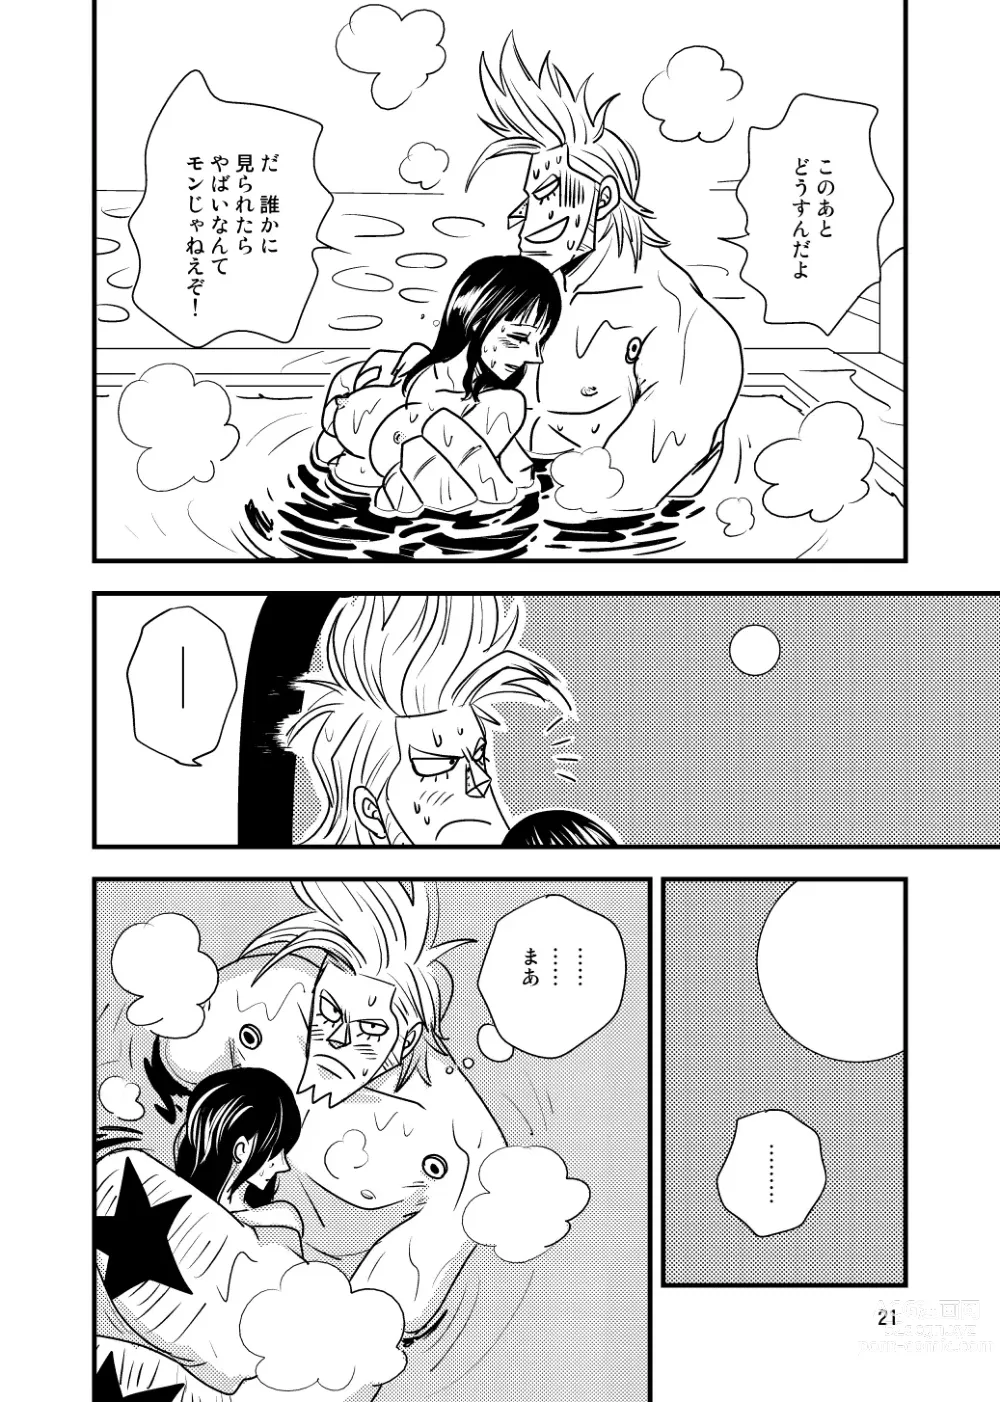 Page 19 of doujinshi Kura-Kura